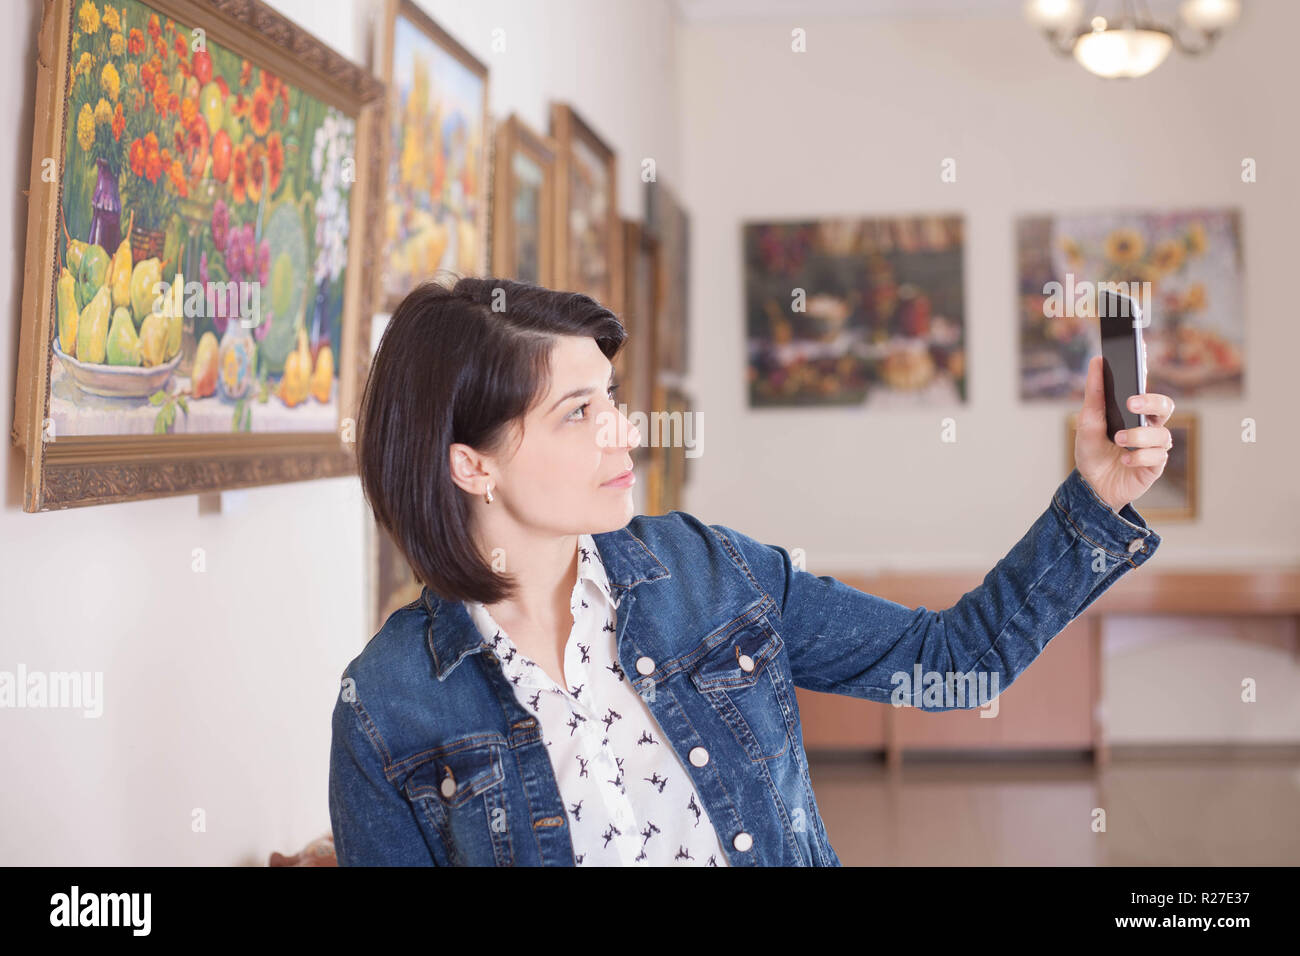 Ritratto di una giovane donna prendendo un selfie in una galleria d'arte o museo. Foto Stock